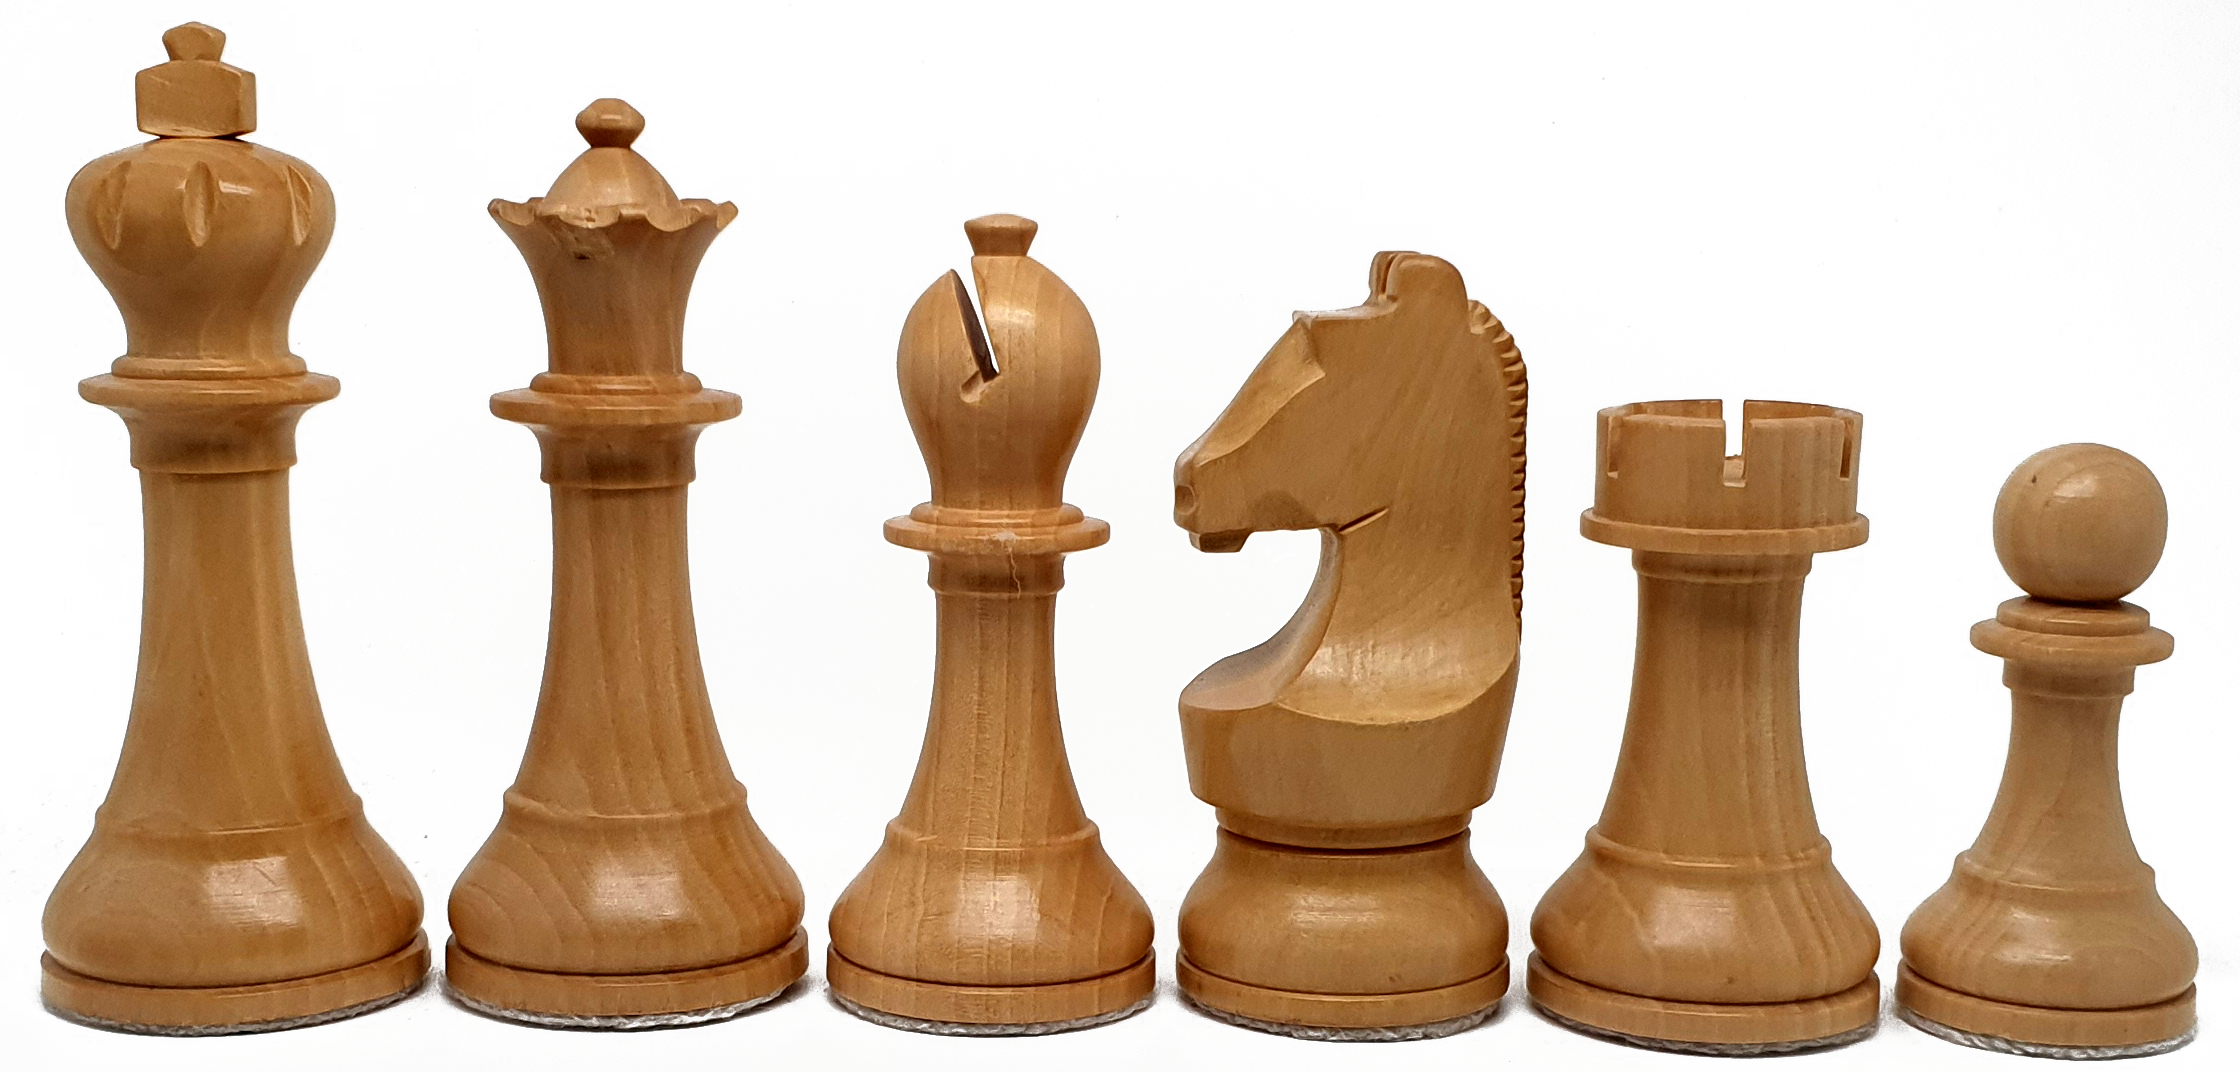 VI/ Piezas de ajedrez modelo Carlsen-Nepo "3,75" Shisham.